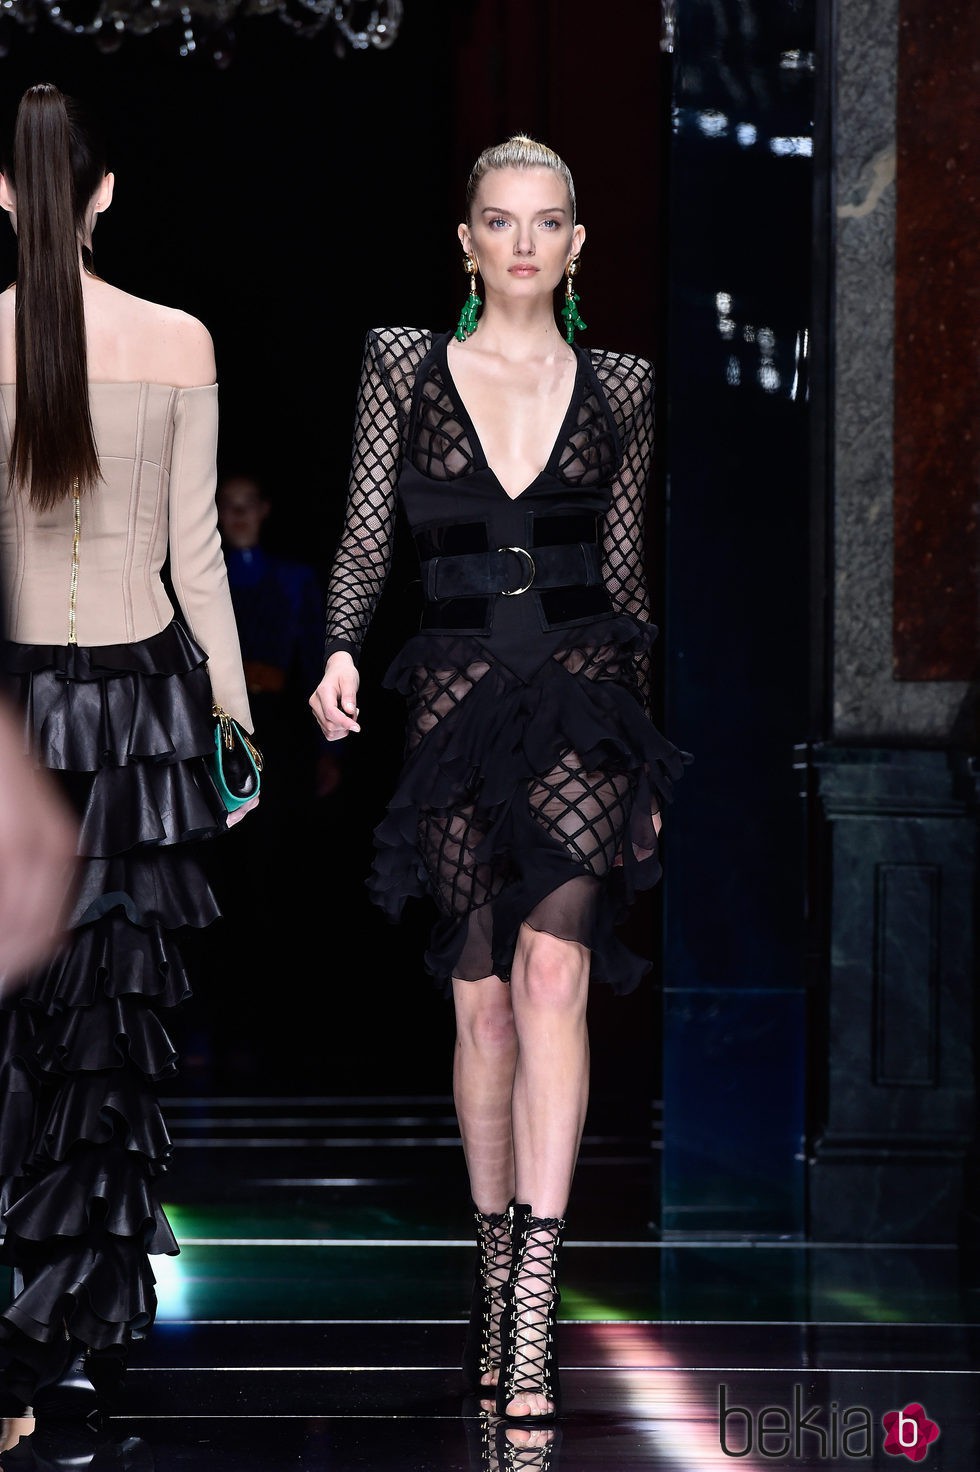 Lily Donaldson desfilando con la colección primavera/verano 2016 de Balmain en Paris Fashion Week